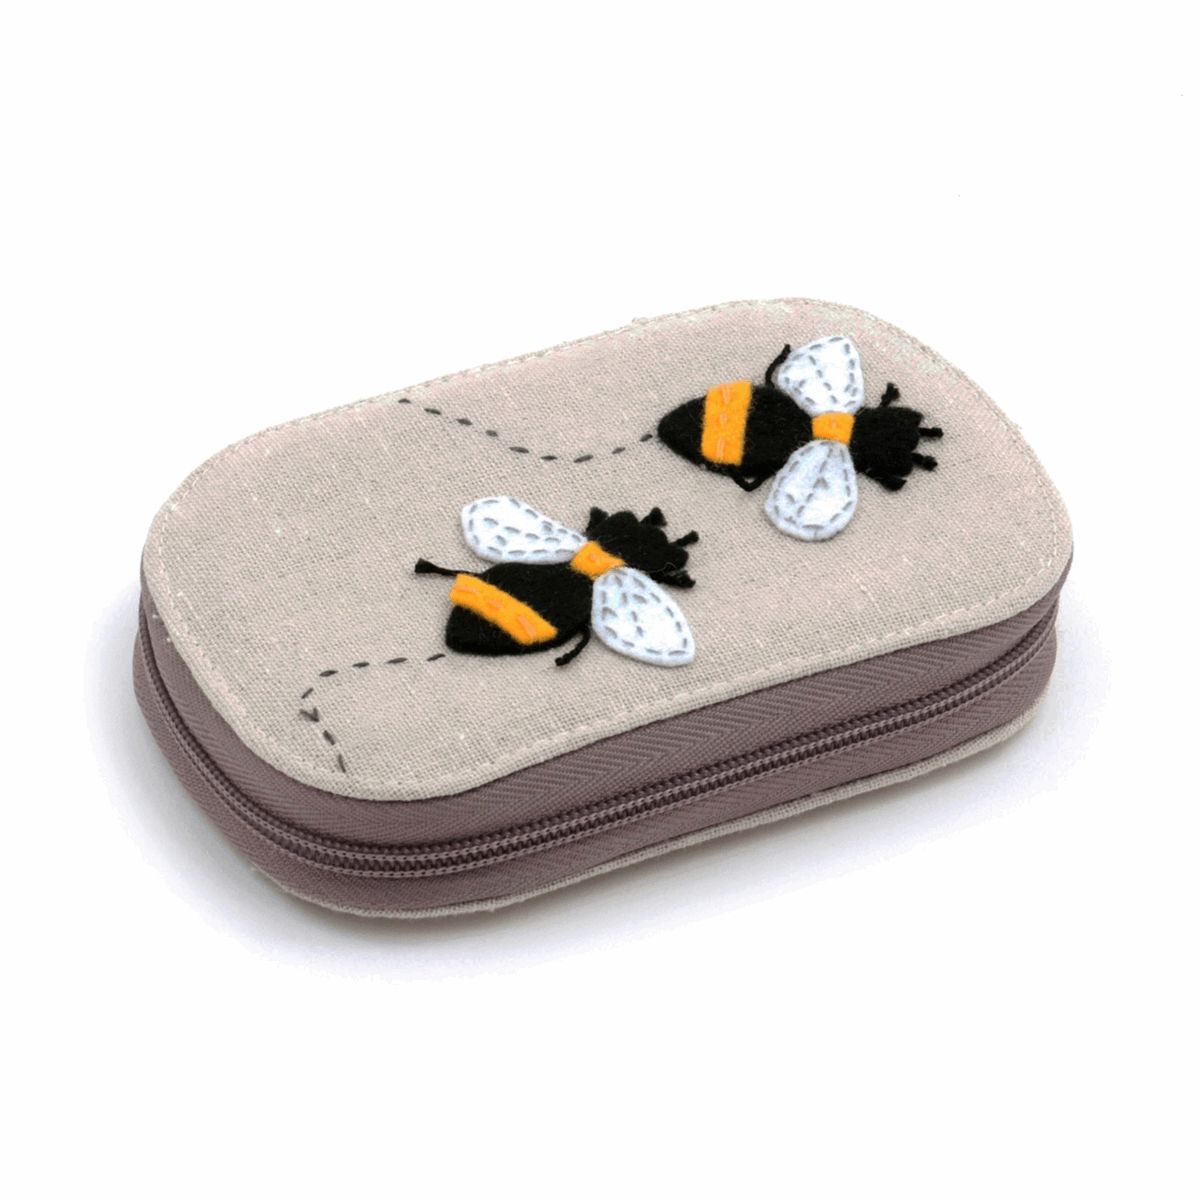 Zip Case Sewing Kit - Appliqué Bee